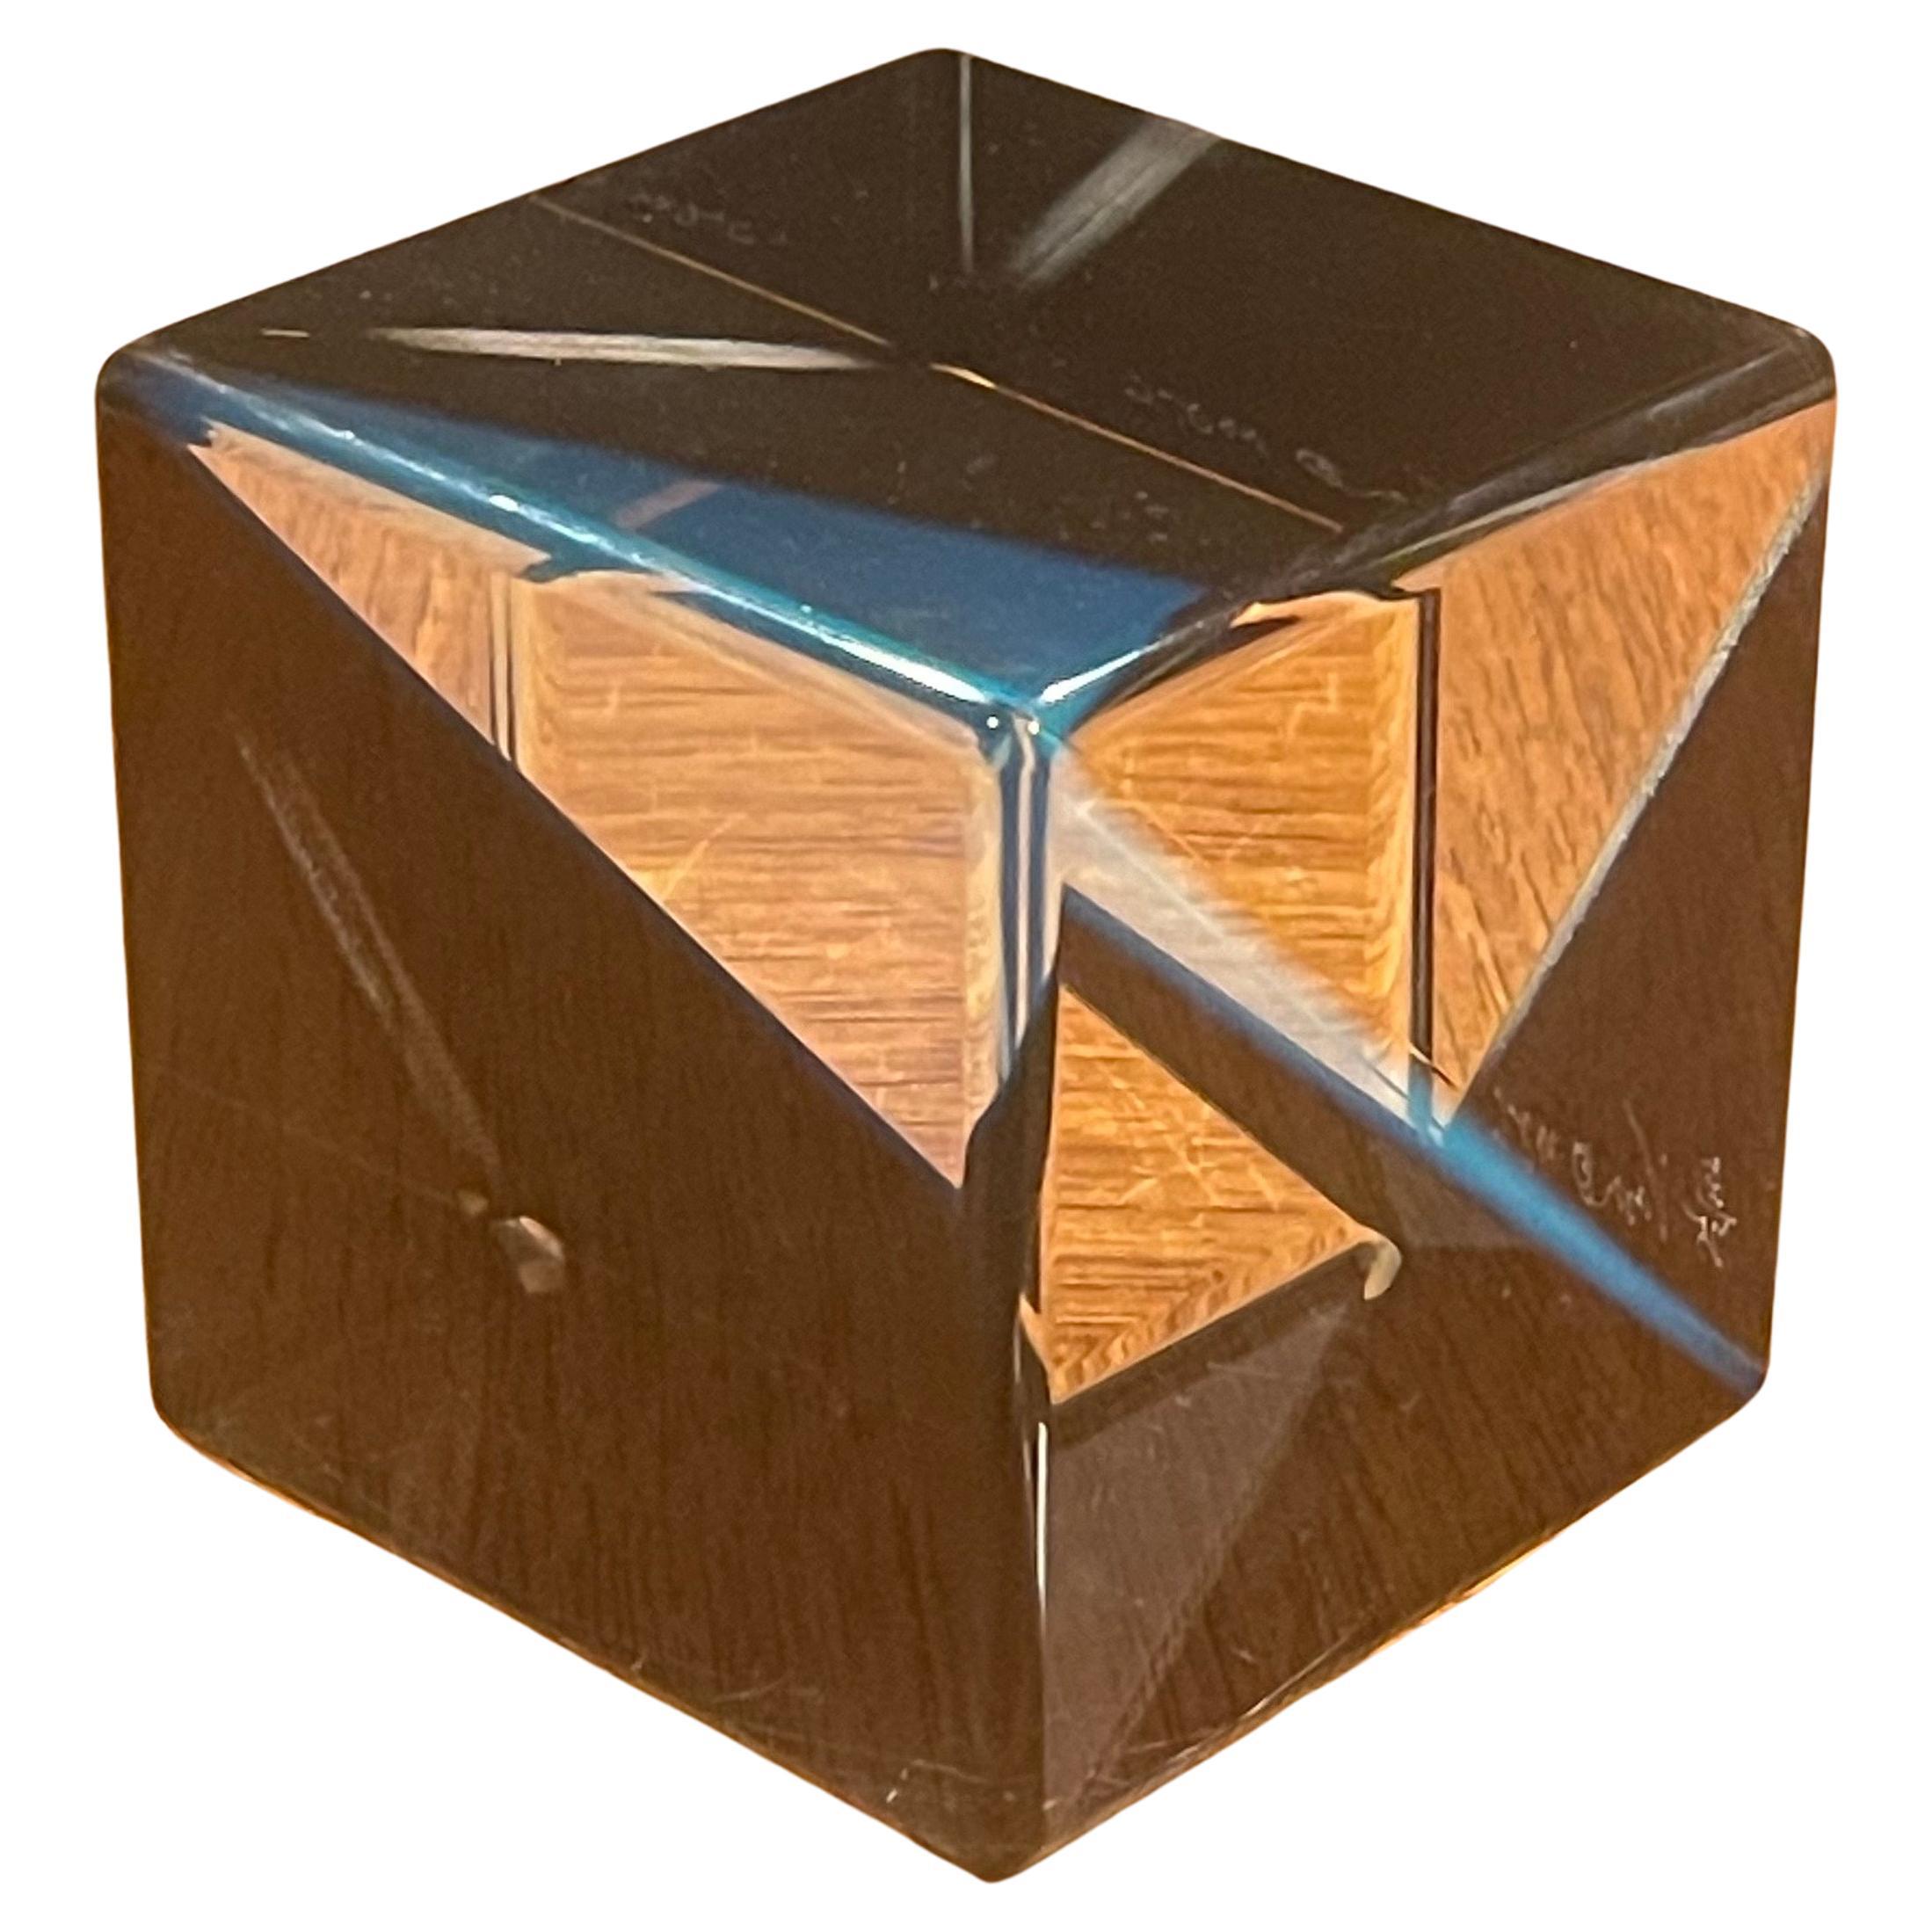 Sculpture cubique en acrylique Op Art de Vasa Mihich, vers 1986. L'aspect optique est modifié en faisant tourner la pièce et en laissant la lumière se réfracter sous différents angles ; il est possible de créer littéralement des centaines d'aspects